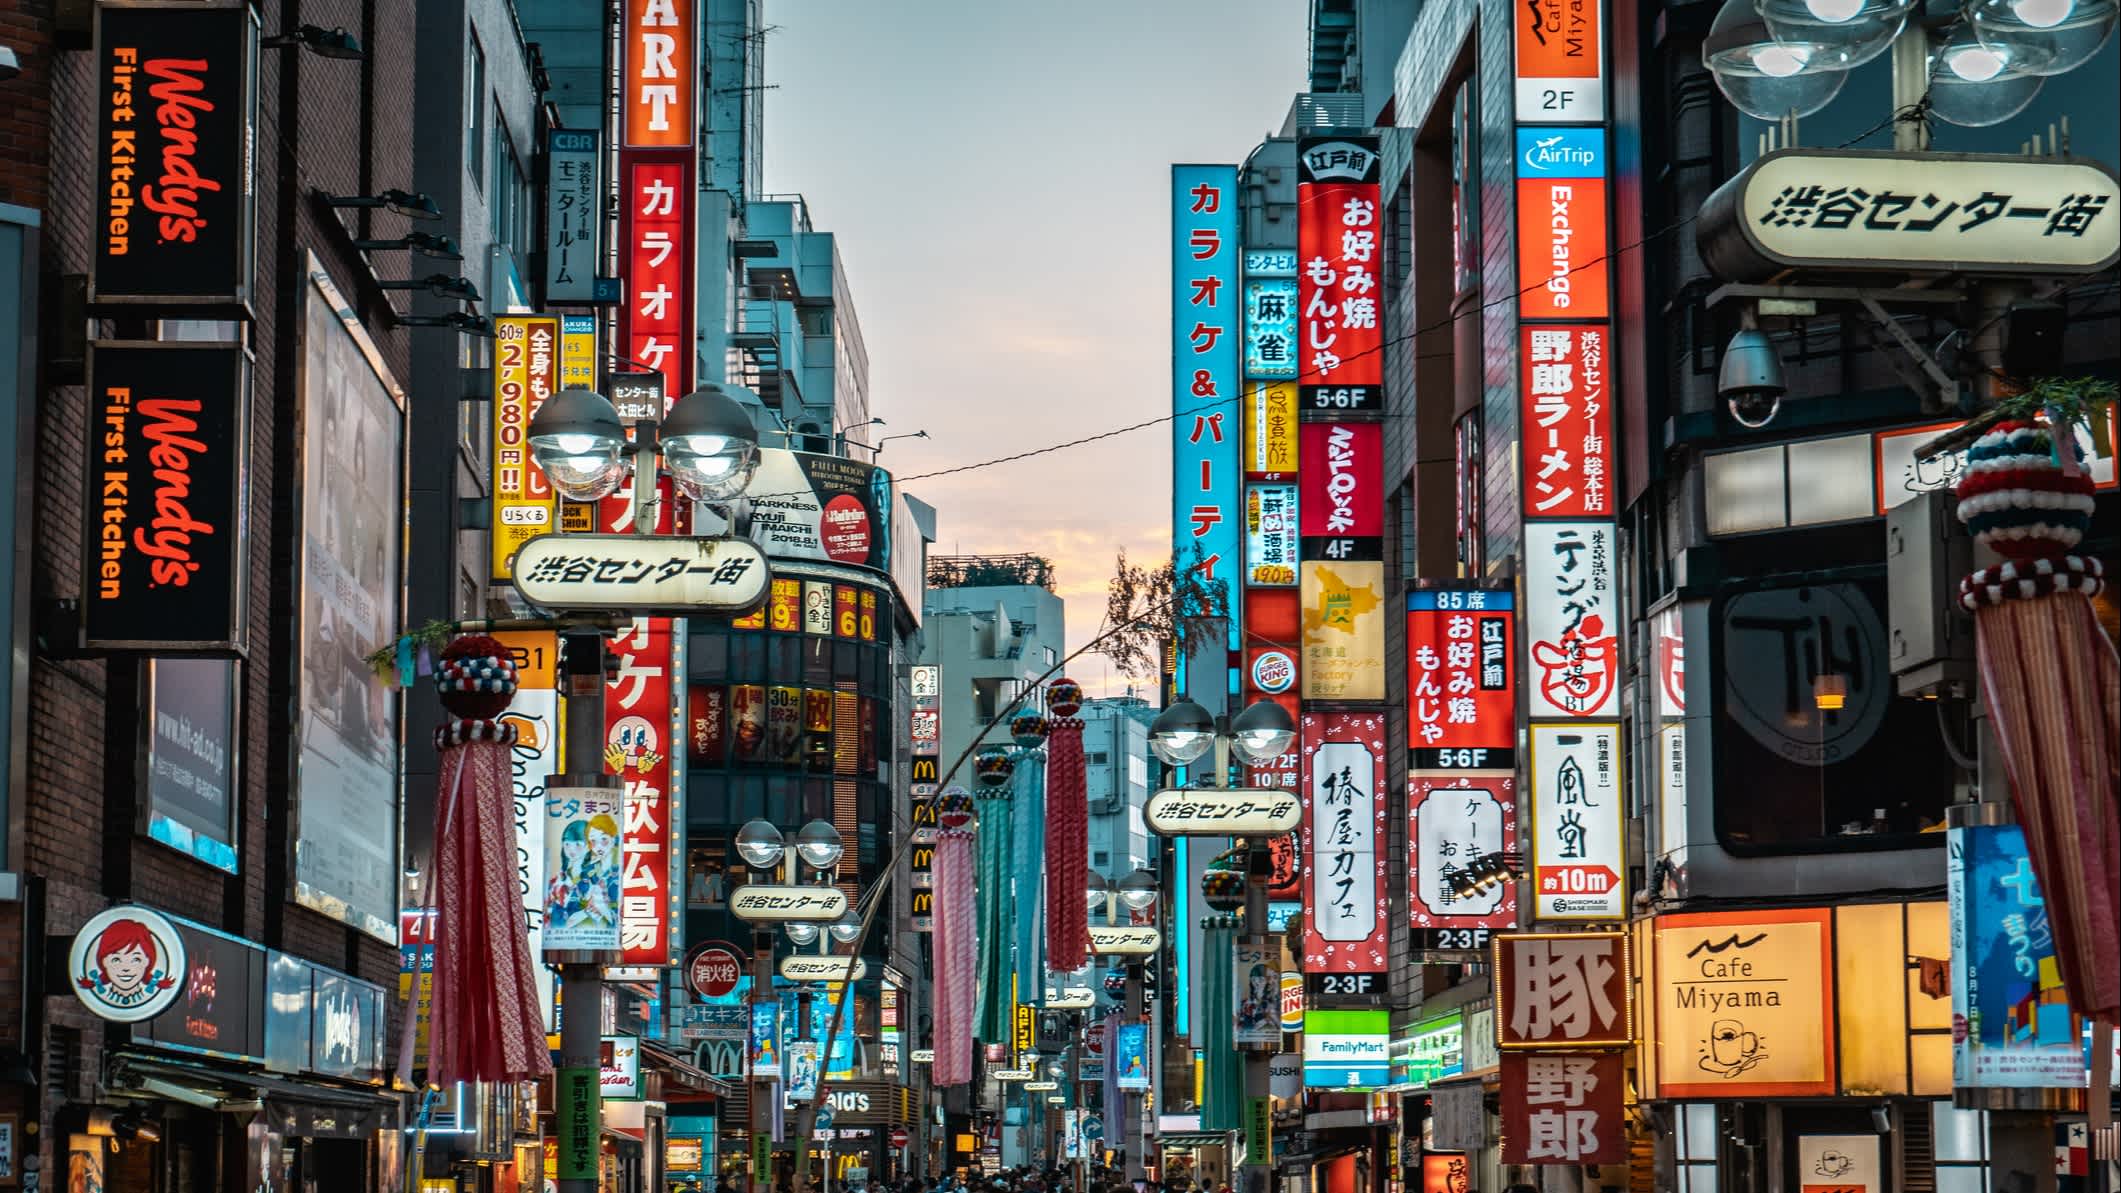 Vue de la rue Shibuya à Tokyo, Japon

